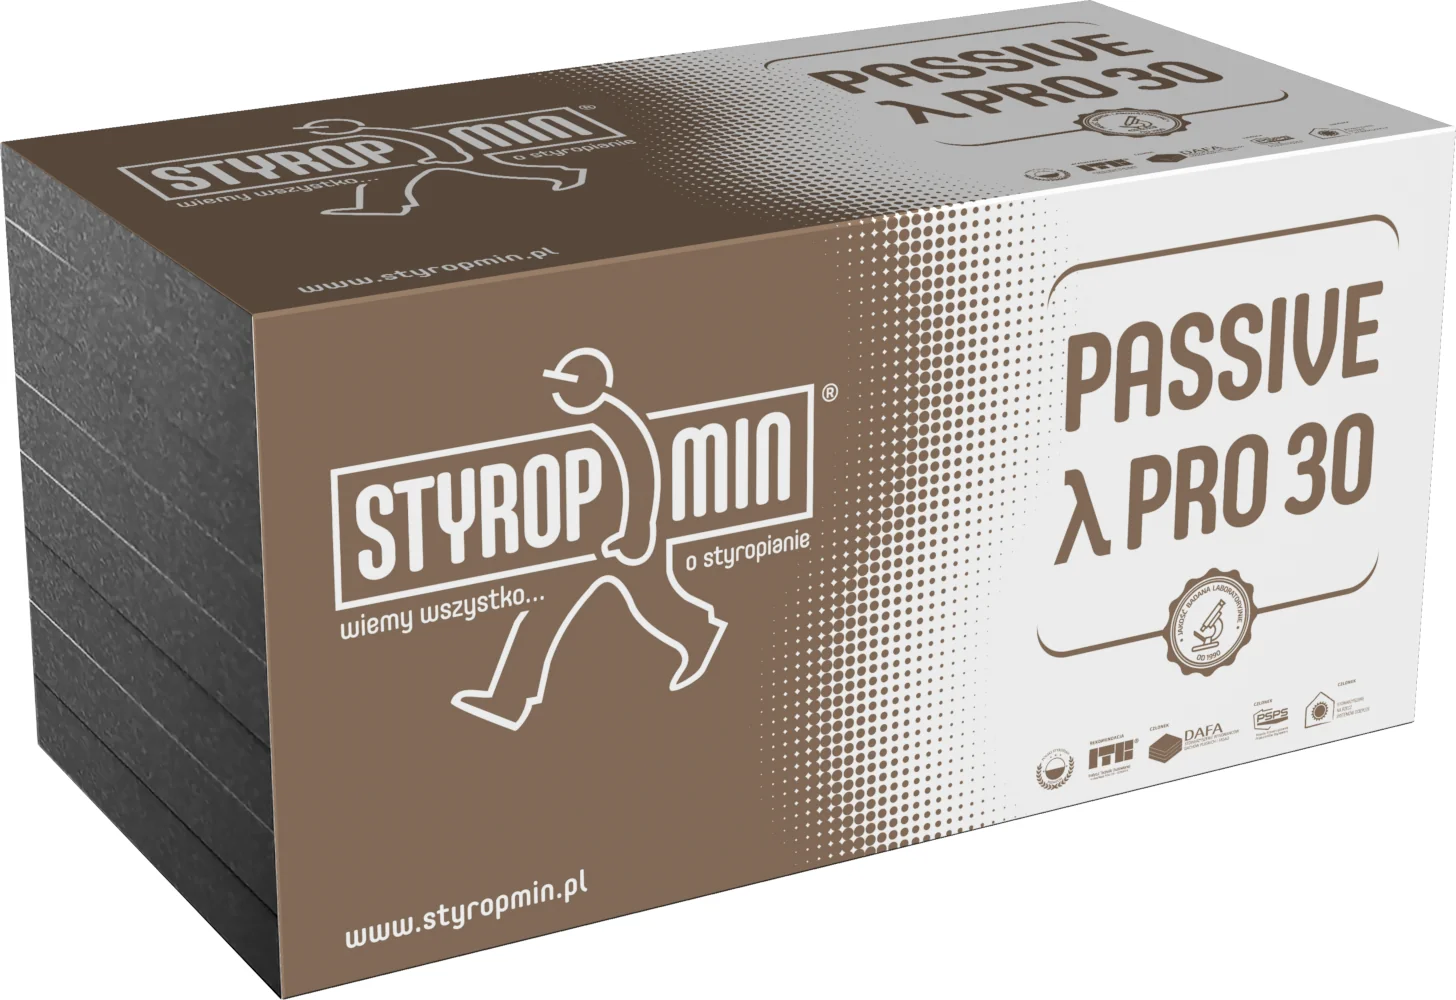 Styropmin Passive PRO 30